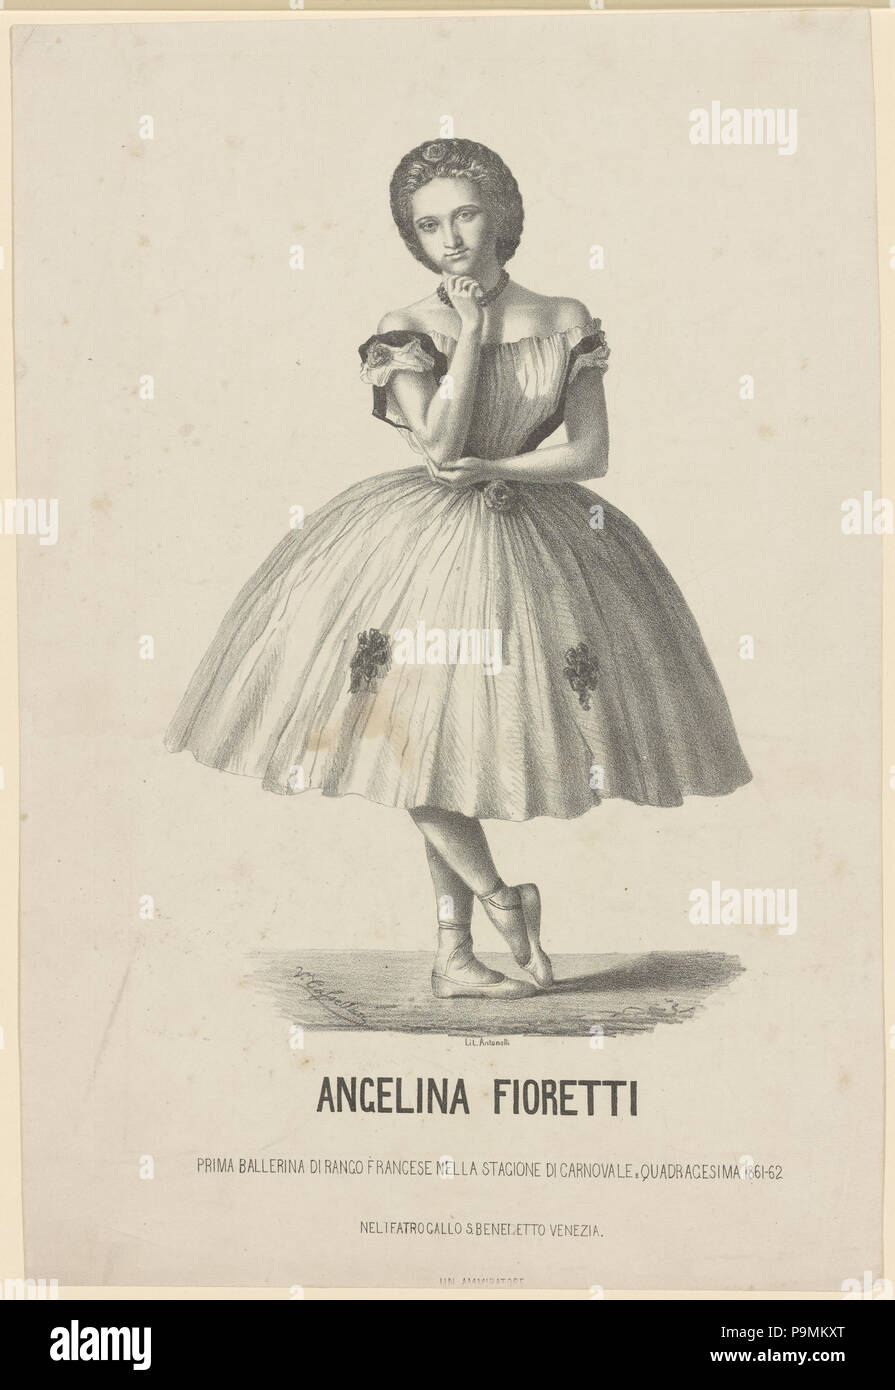 131 Angelina Fioretti, prima Ballerina di Rango francese nella Stagione di carnovale e quadragesima 1861-62 nel Teatro Gallo S. Benedetto, Venezia (Nypl b 12148321-5234930) Stockfoto